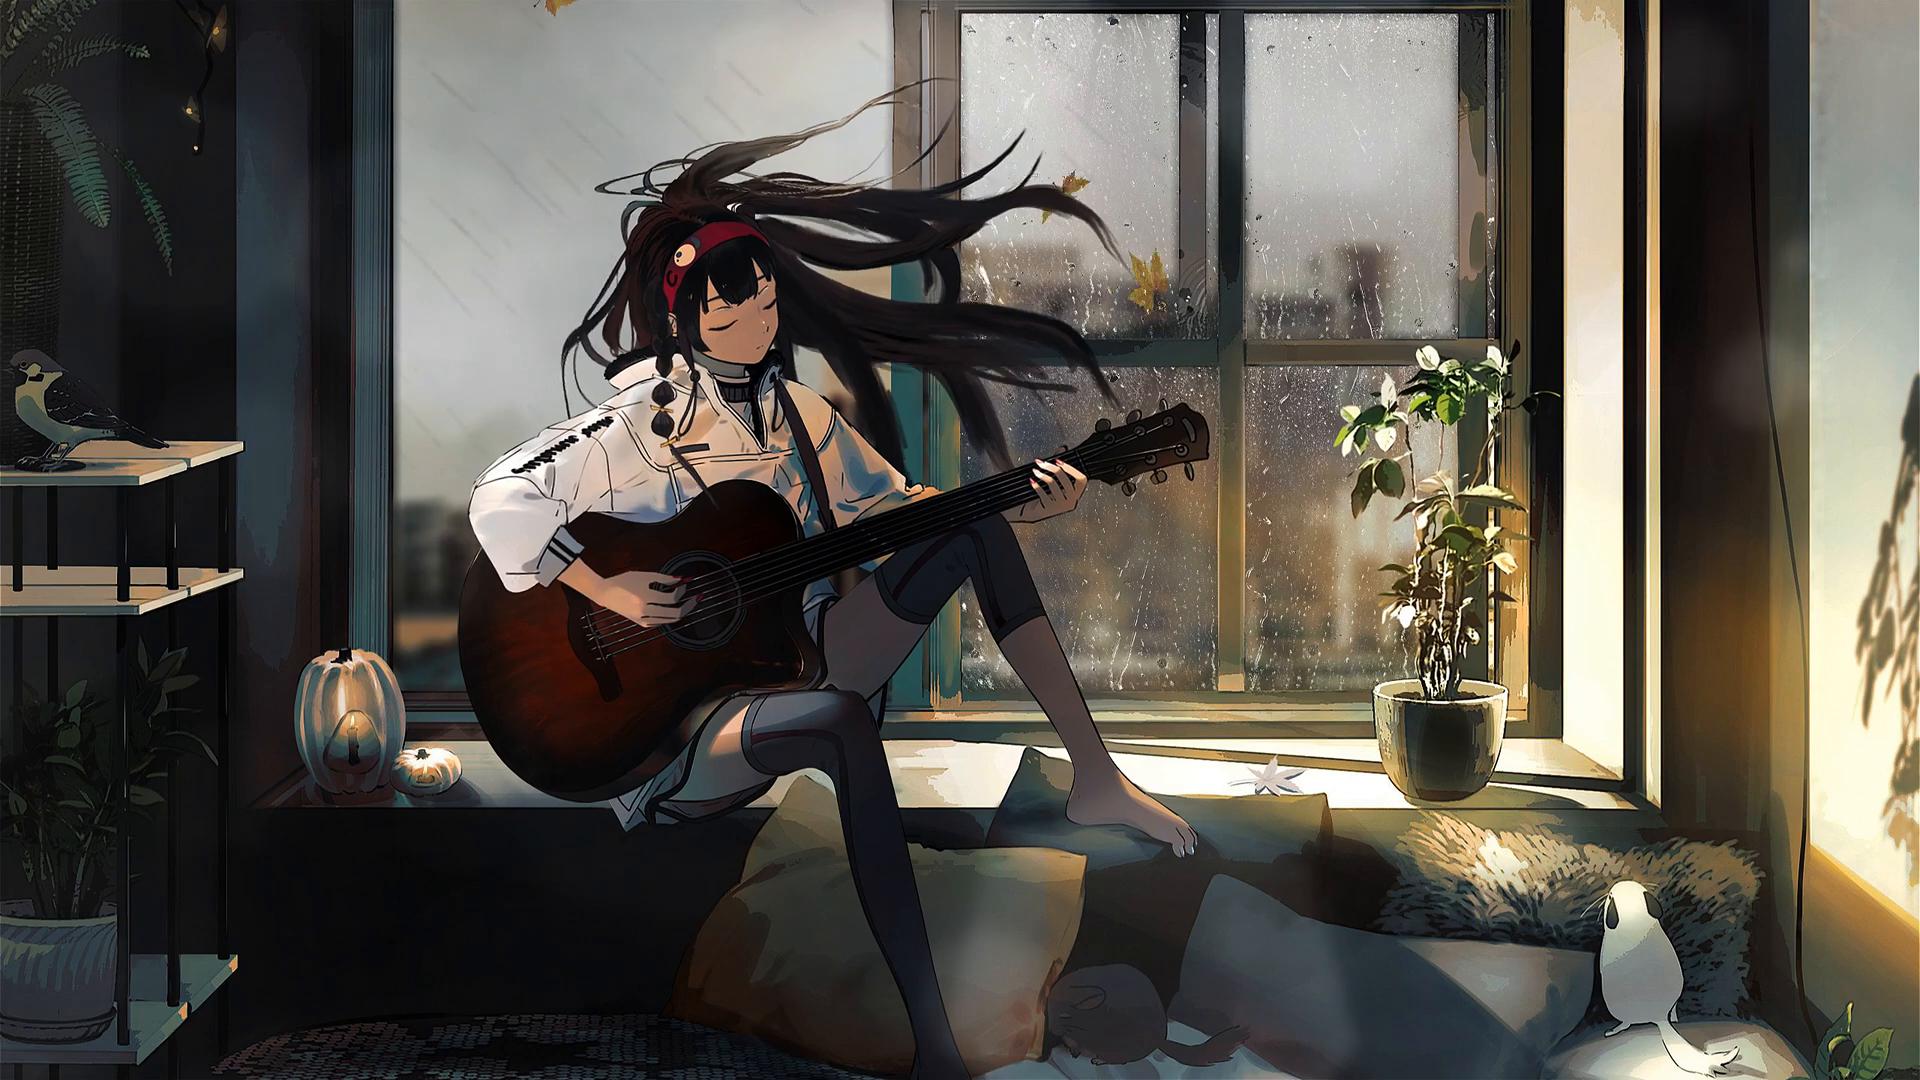 Guitar Girl Base by SolarSensei on DeviantArt